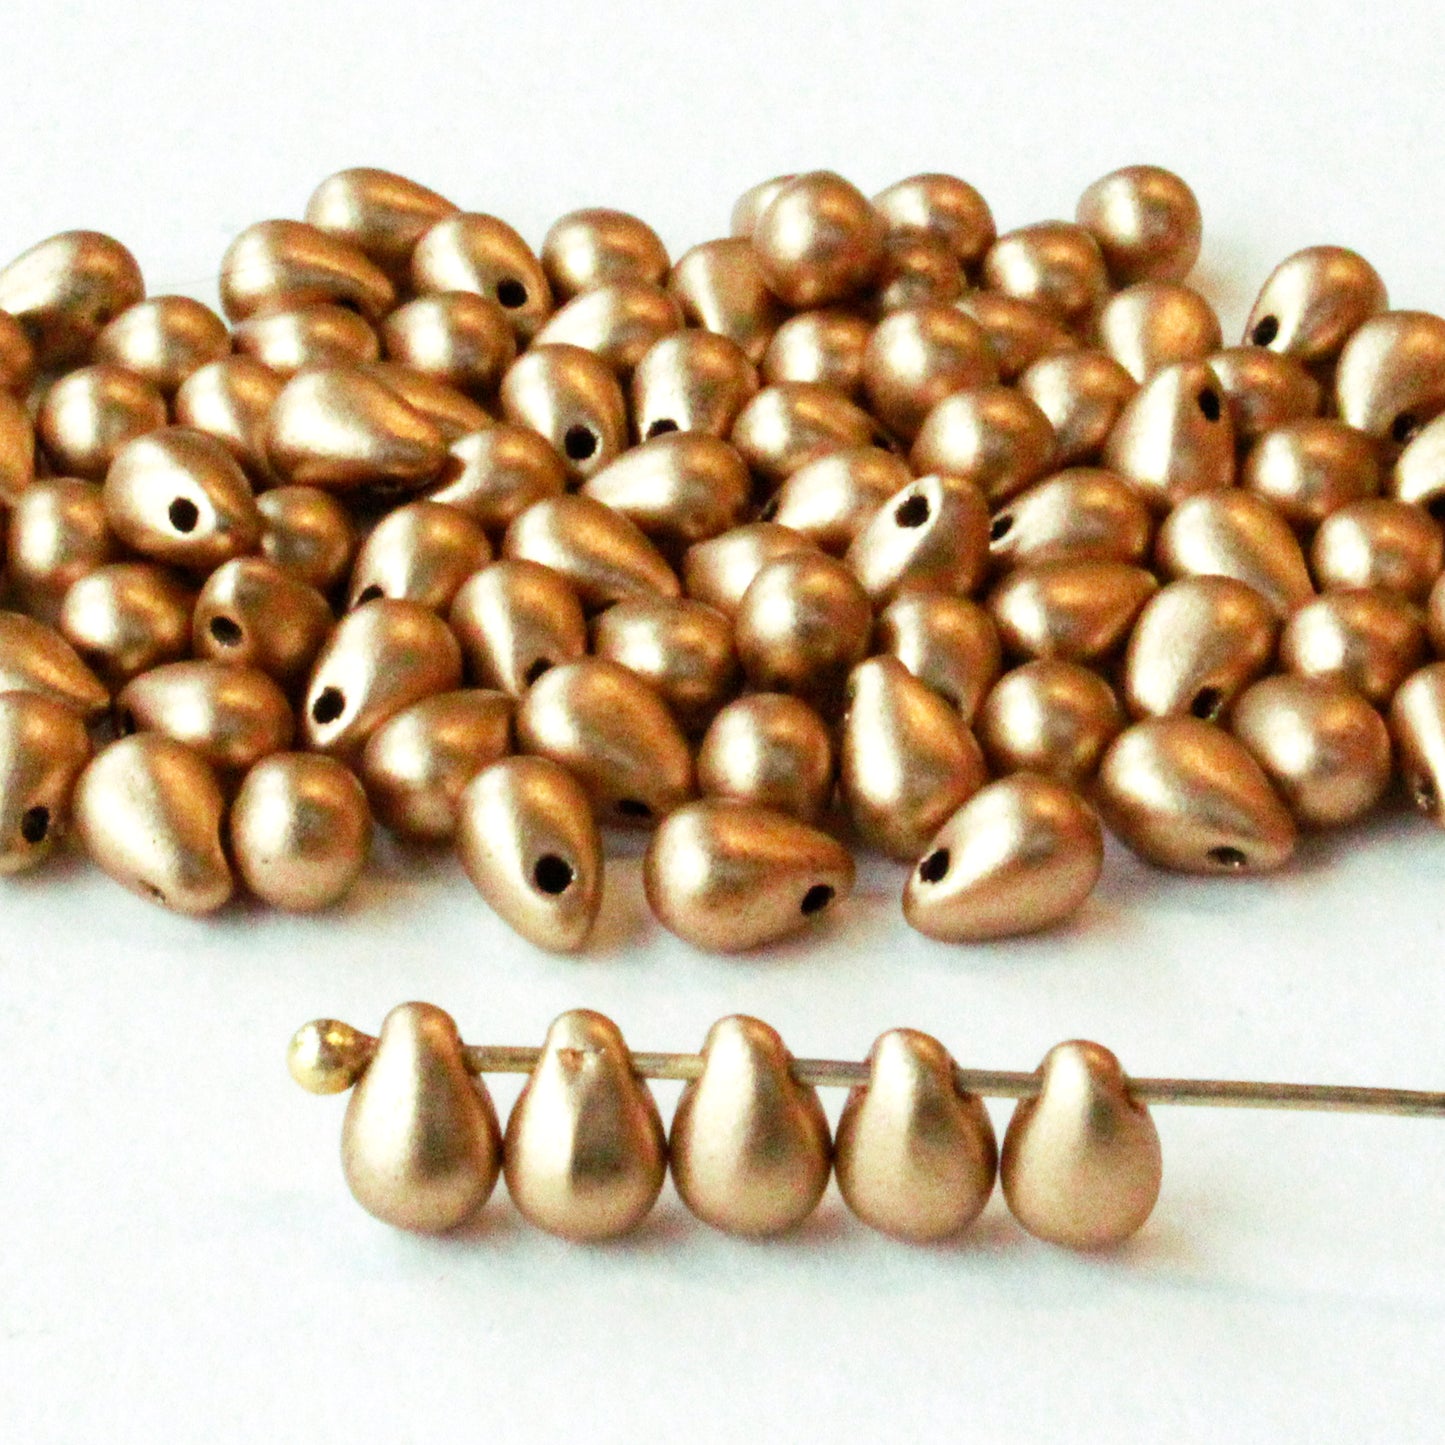 4x6mm Glass Teardrop Beads - Gold Matte - 100 beads